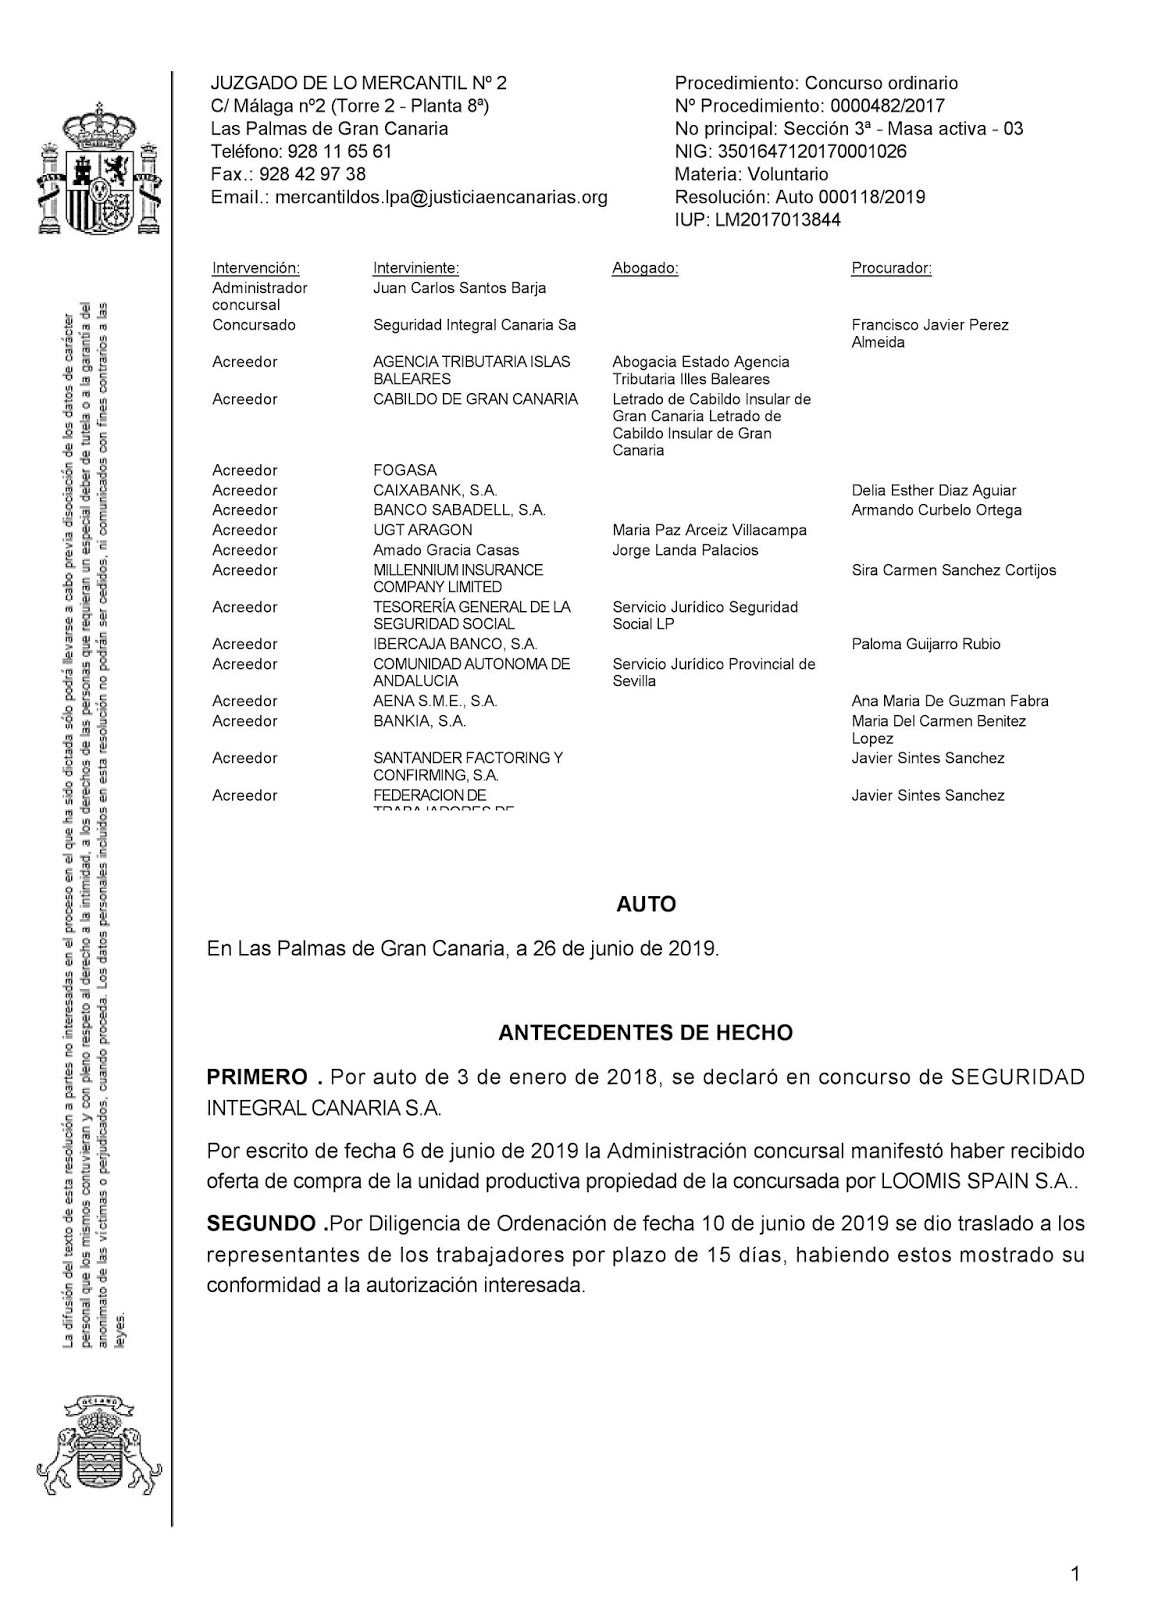 Autorizada la venta de seguridad integral Canaria a la empresa loomis (Ver documento)